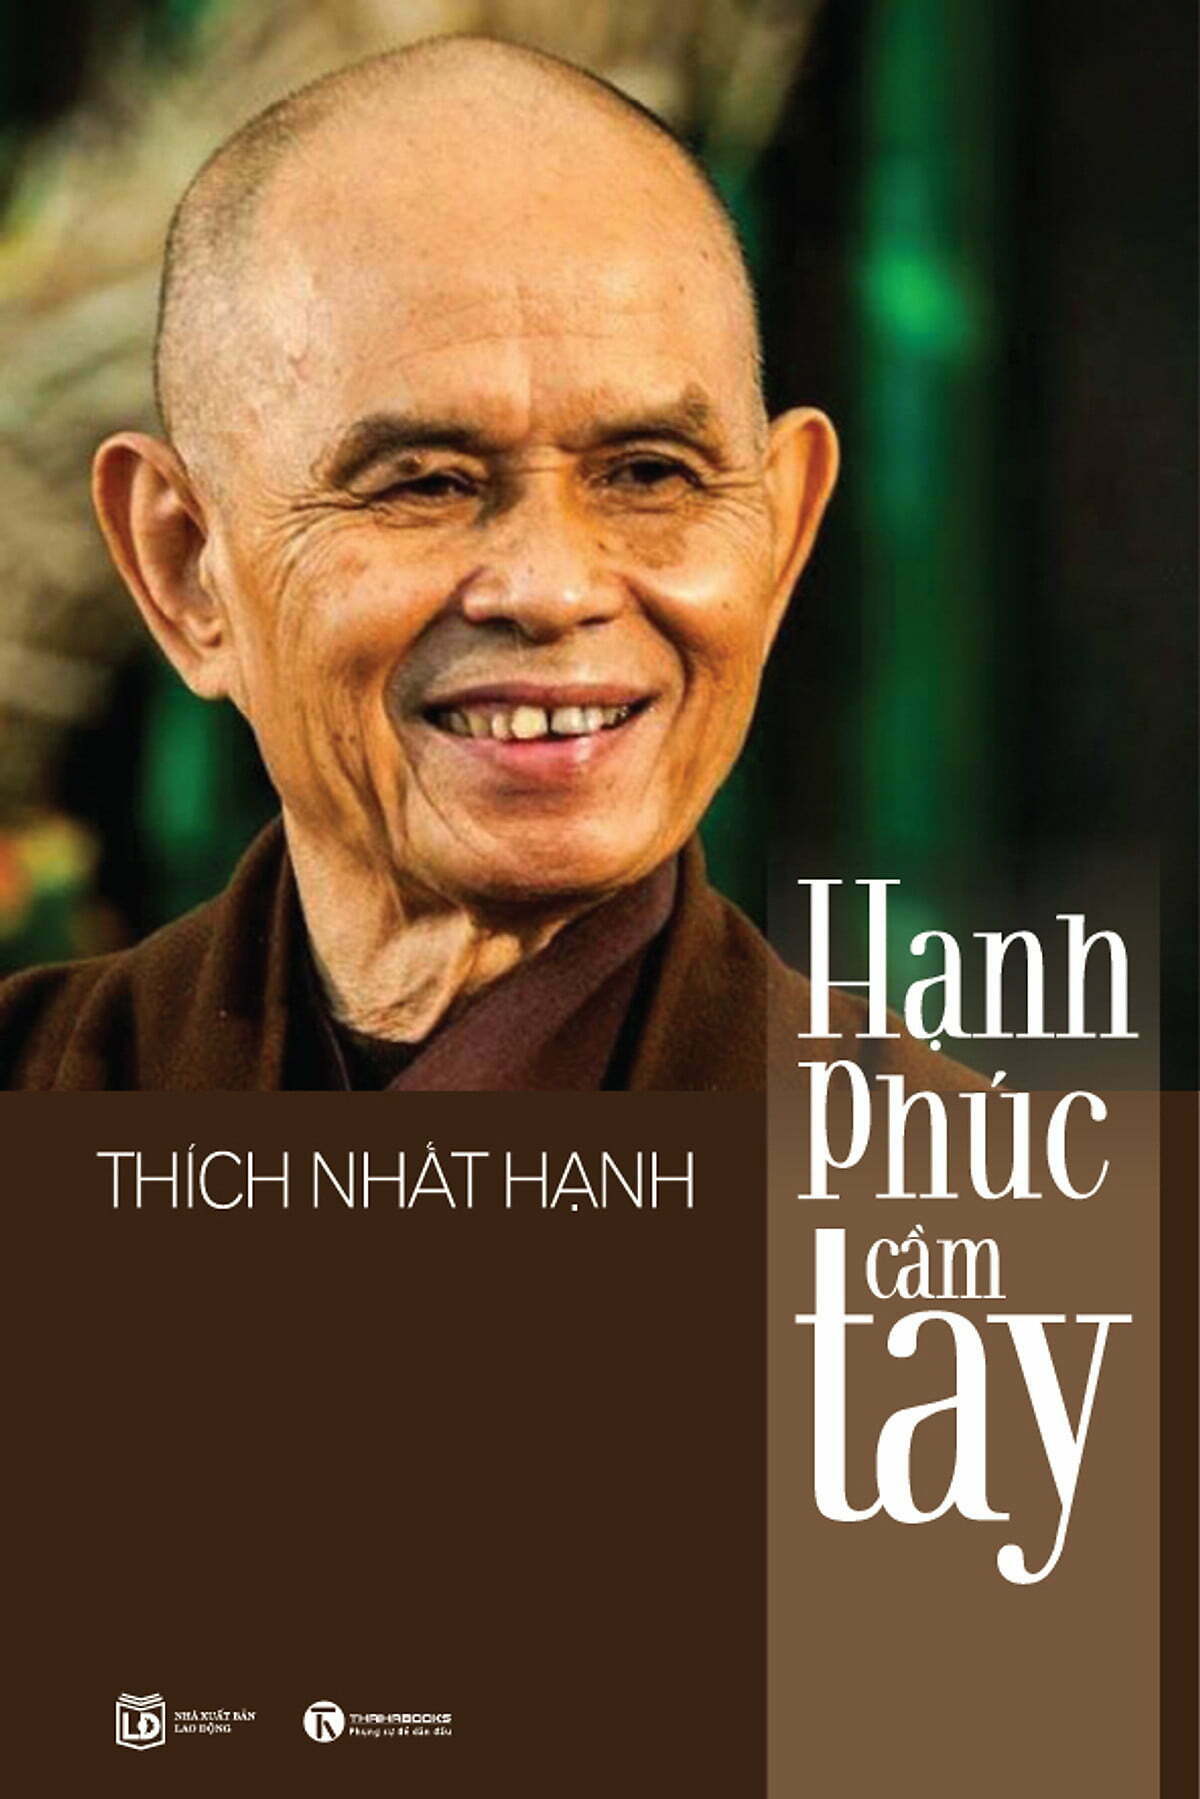 Hạnh phúc cầm tay - Thiền sư Thích Nhất Hạnh